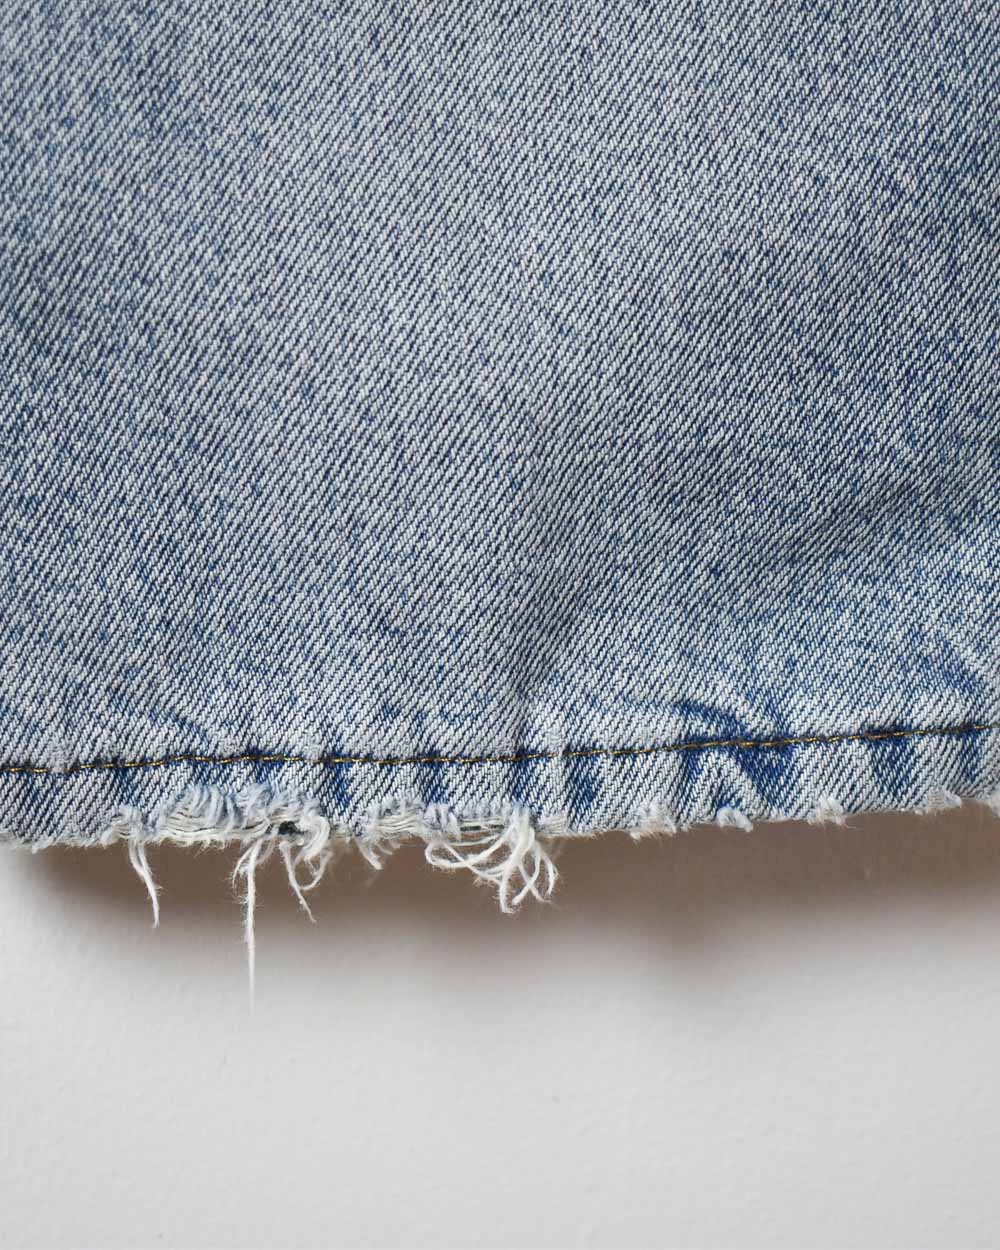 BabyBlue LL Bean Fleece Lined Jeans - W34 L29